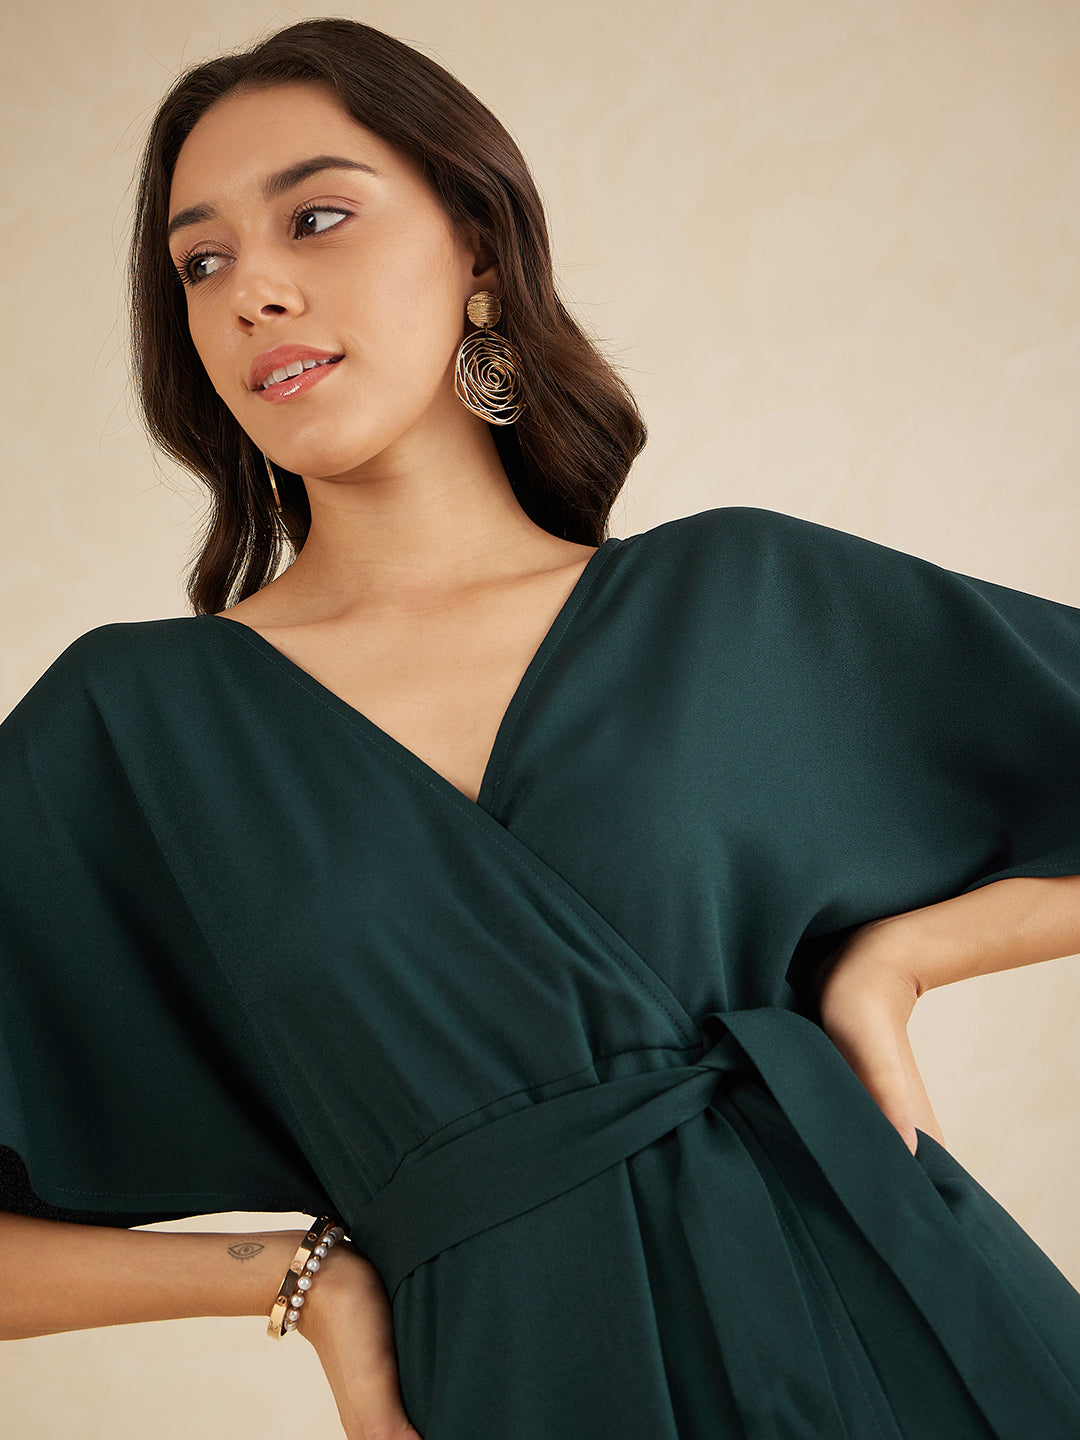 Green Kimono Wrap Maxi Dress